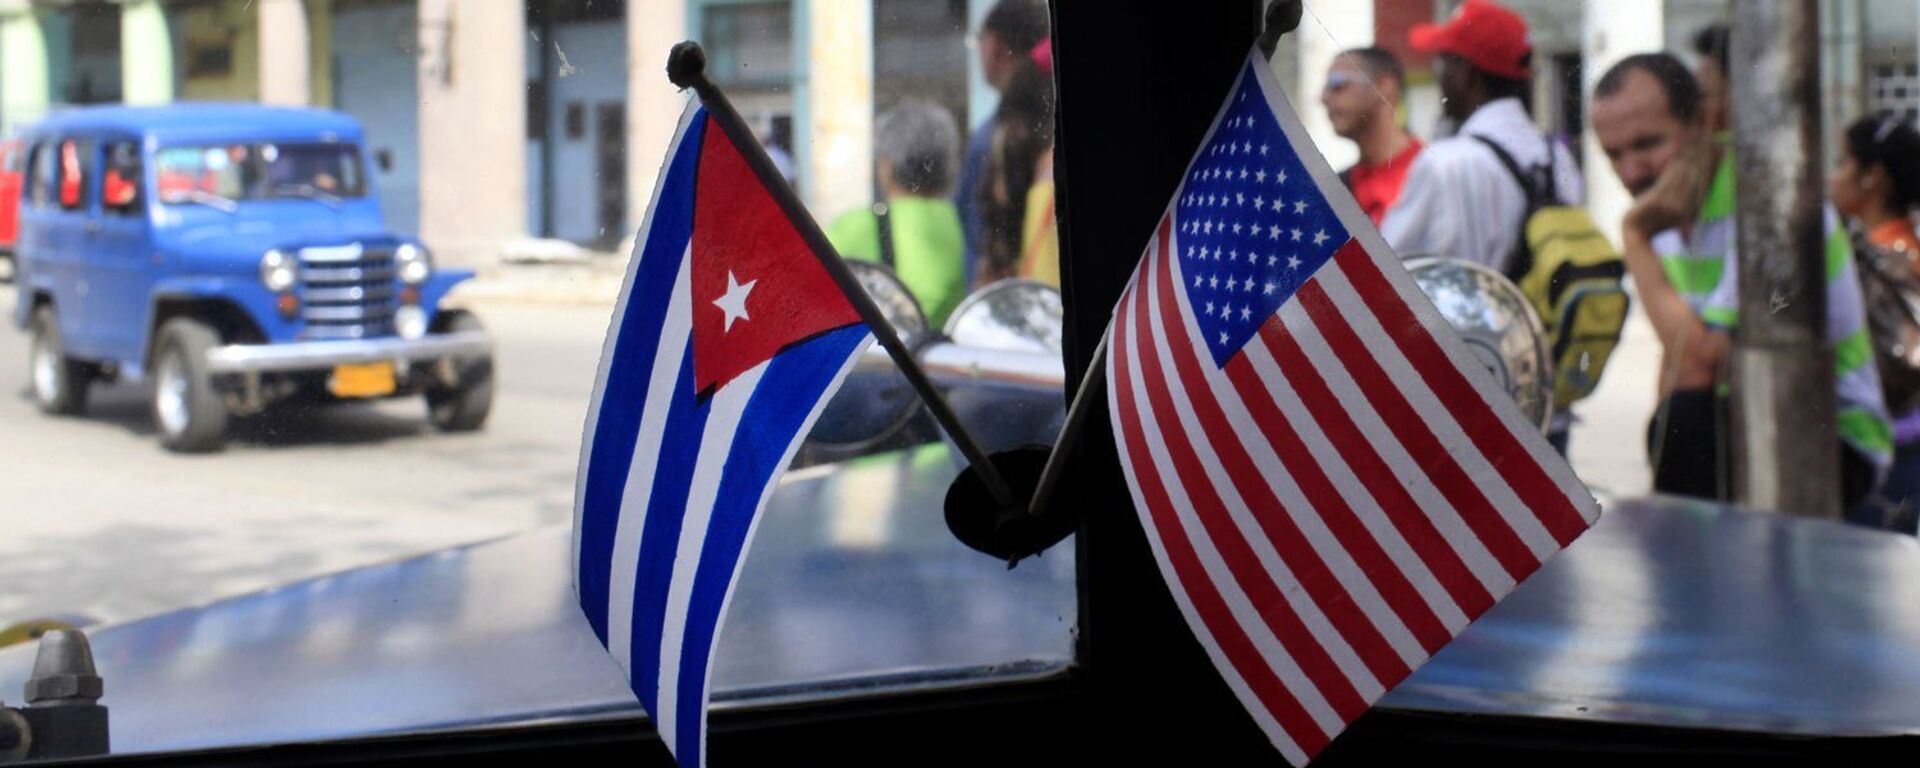 Banderas de EEUU y Cuba - Sputnik Mundo, 1920, 22.07.2021